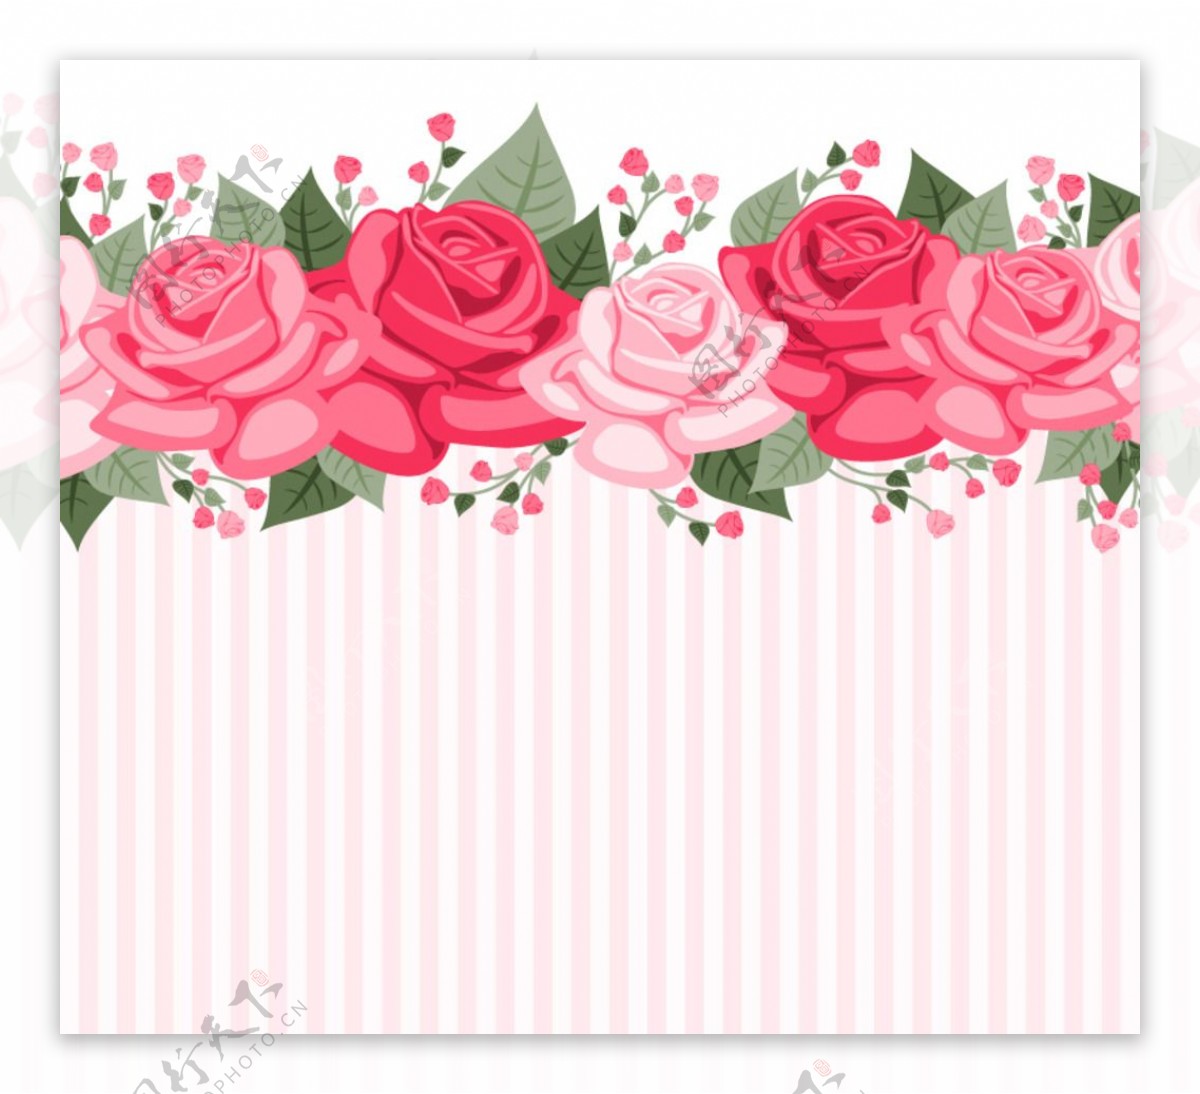 彩色玫瑰花条纹背景图片